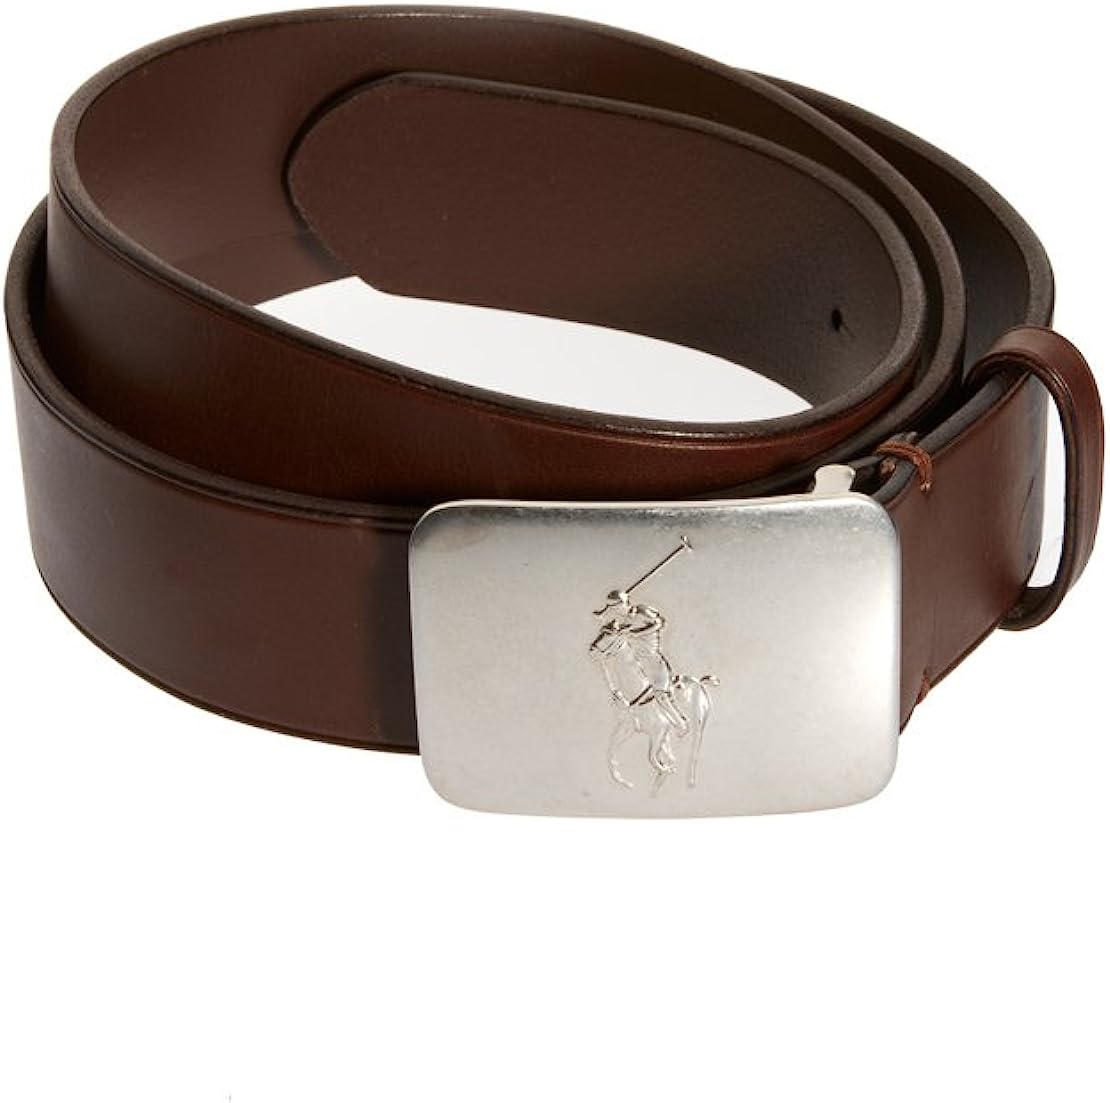 New  Polo Ralph Lauren Men's Big Pony Logo Plaque Leather Belt, Brown, Sz 36 (8639-7) - image 2 of 3